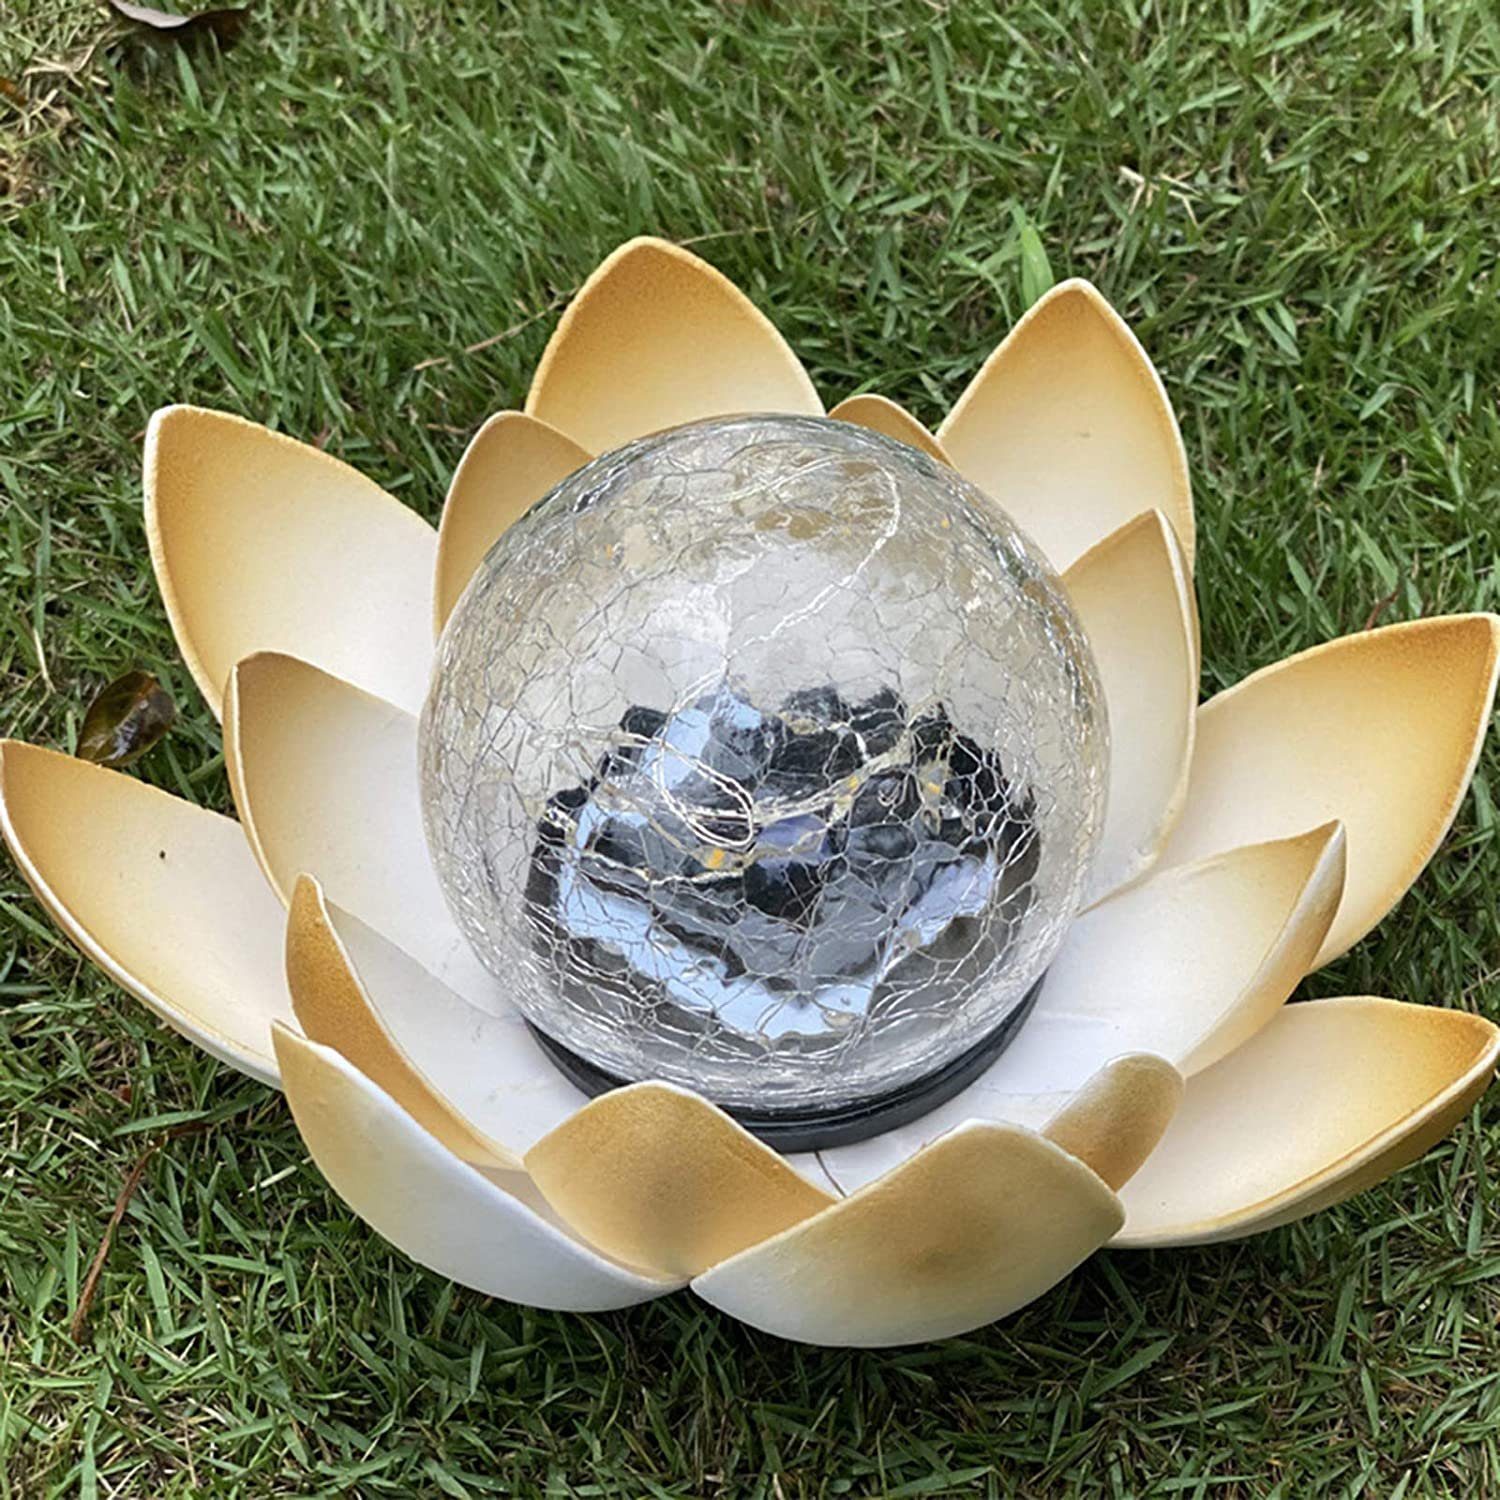 Leway Pool-Lampe »Lotus LED Solarleuchte, schwimmende Blume Nachtlampe  Gartenleuchte Solar, Deko Lampe für Schwimmbad Garten Aquarium Hochzeit  Hof, Teich Beleuchtung«